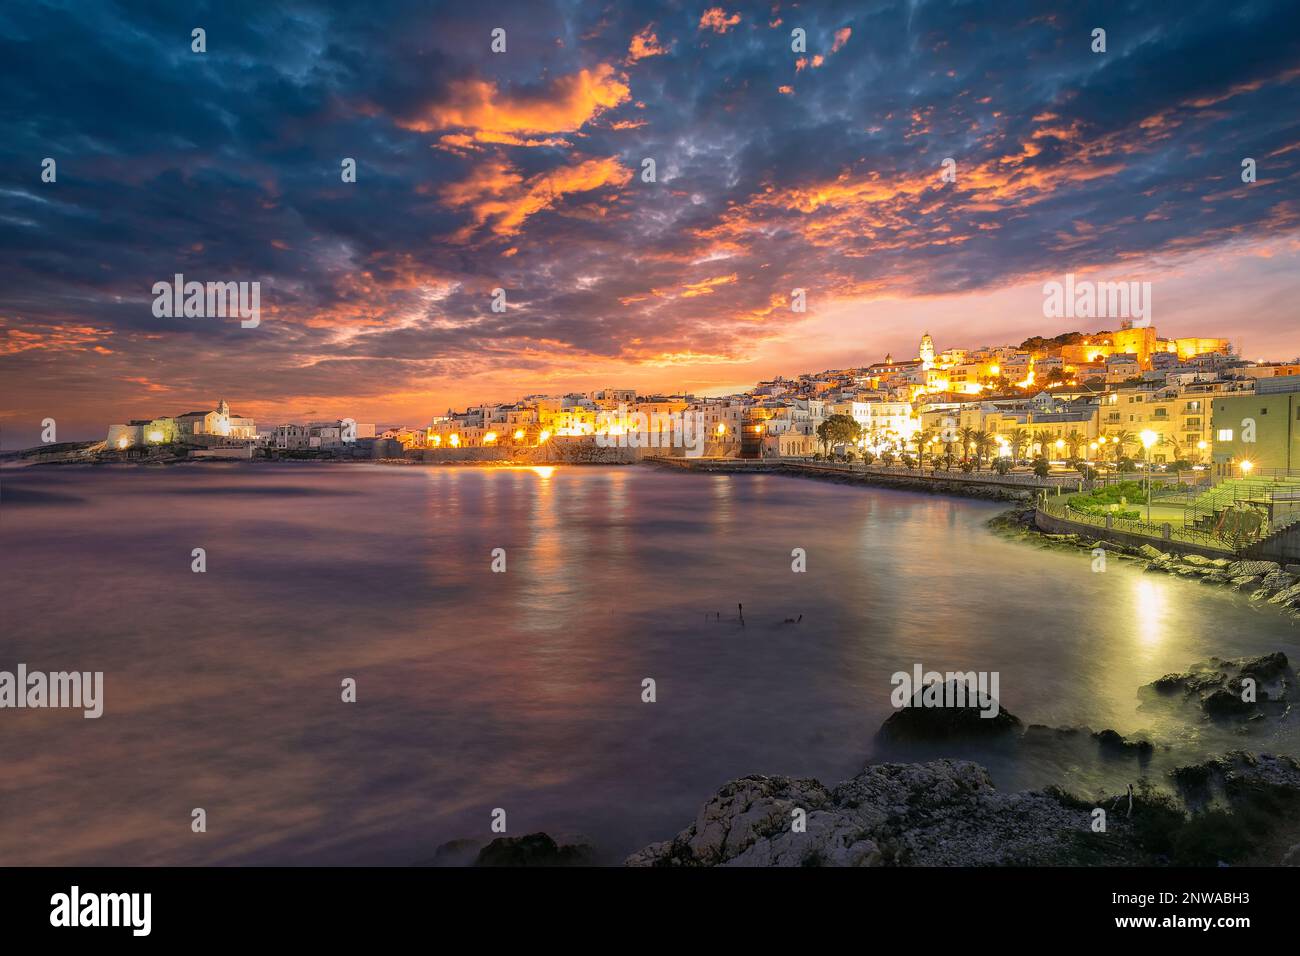 Vue magnifique sur le centre historique et la promenade de la ville de Vieste la nuit. Vue sur la côte de Vieste sur Puglia, Italie, Europe Banque D'Images